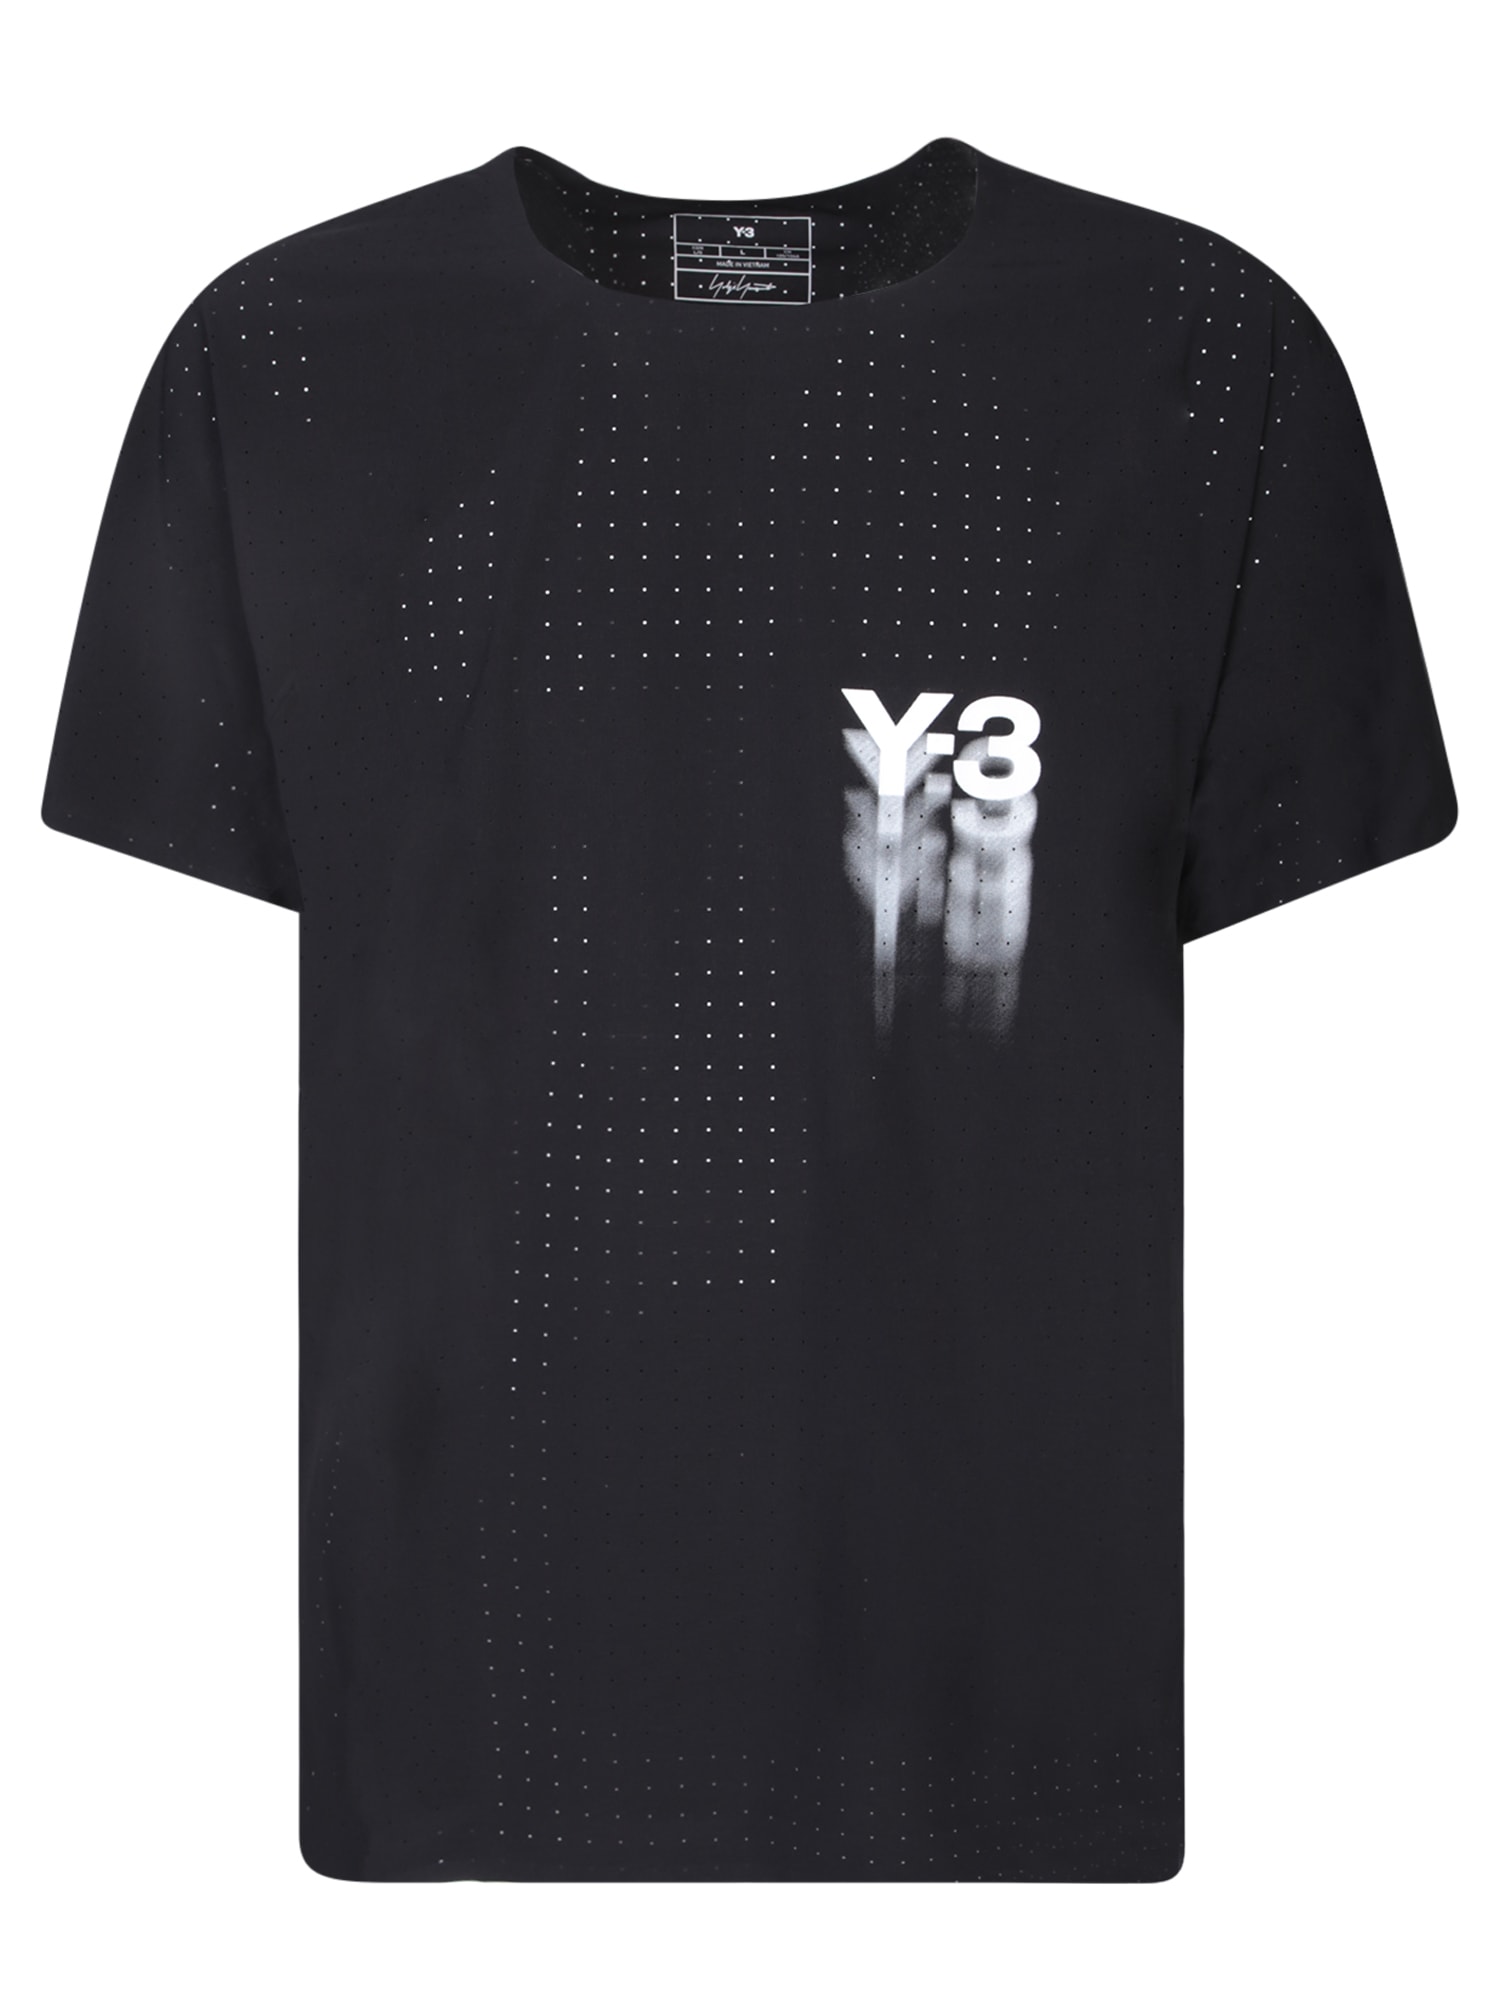 Adidas Y-3 Black Run T-shirt